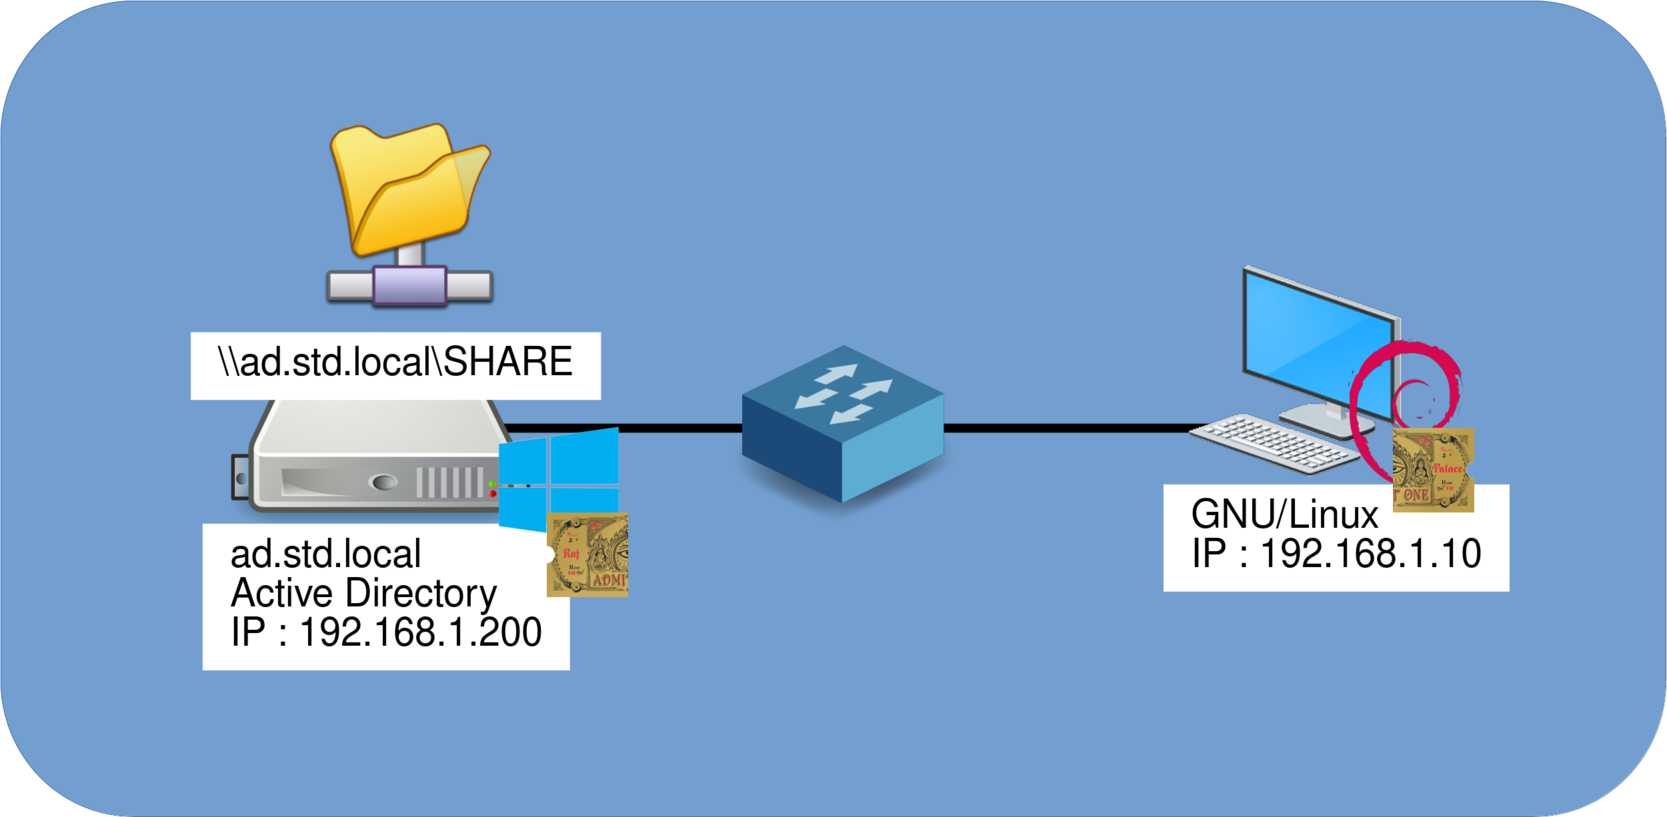 Schéma réseau représentant une station Linux et un partage de fichiers sur un serveur Windows